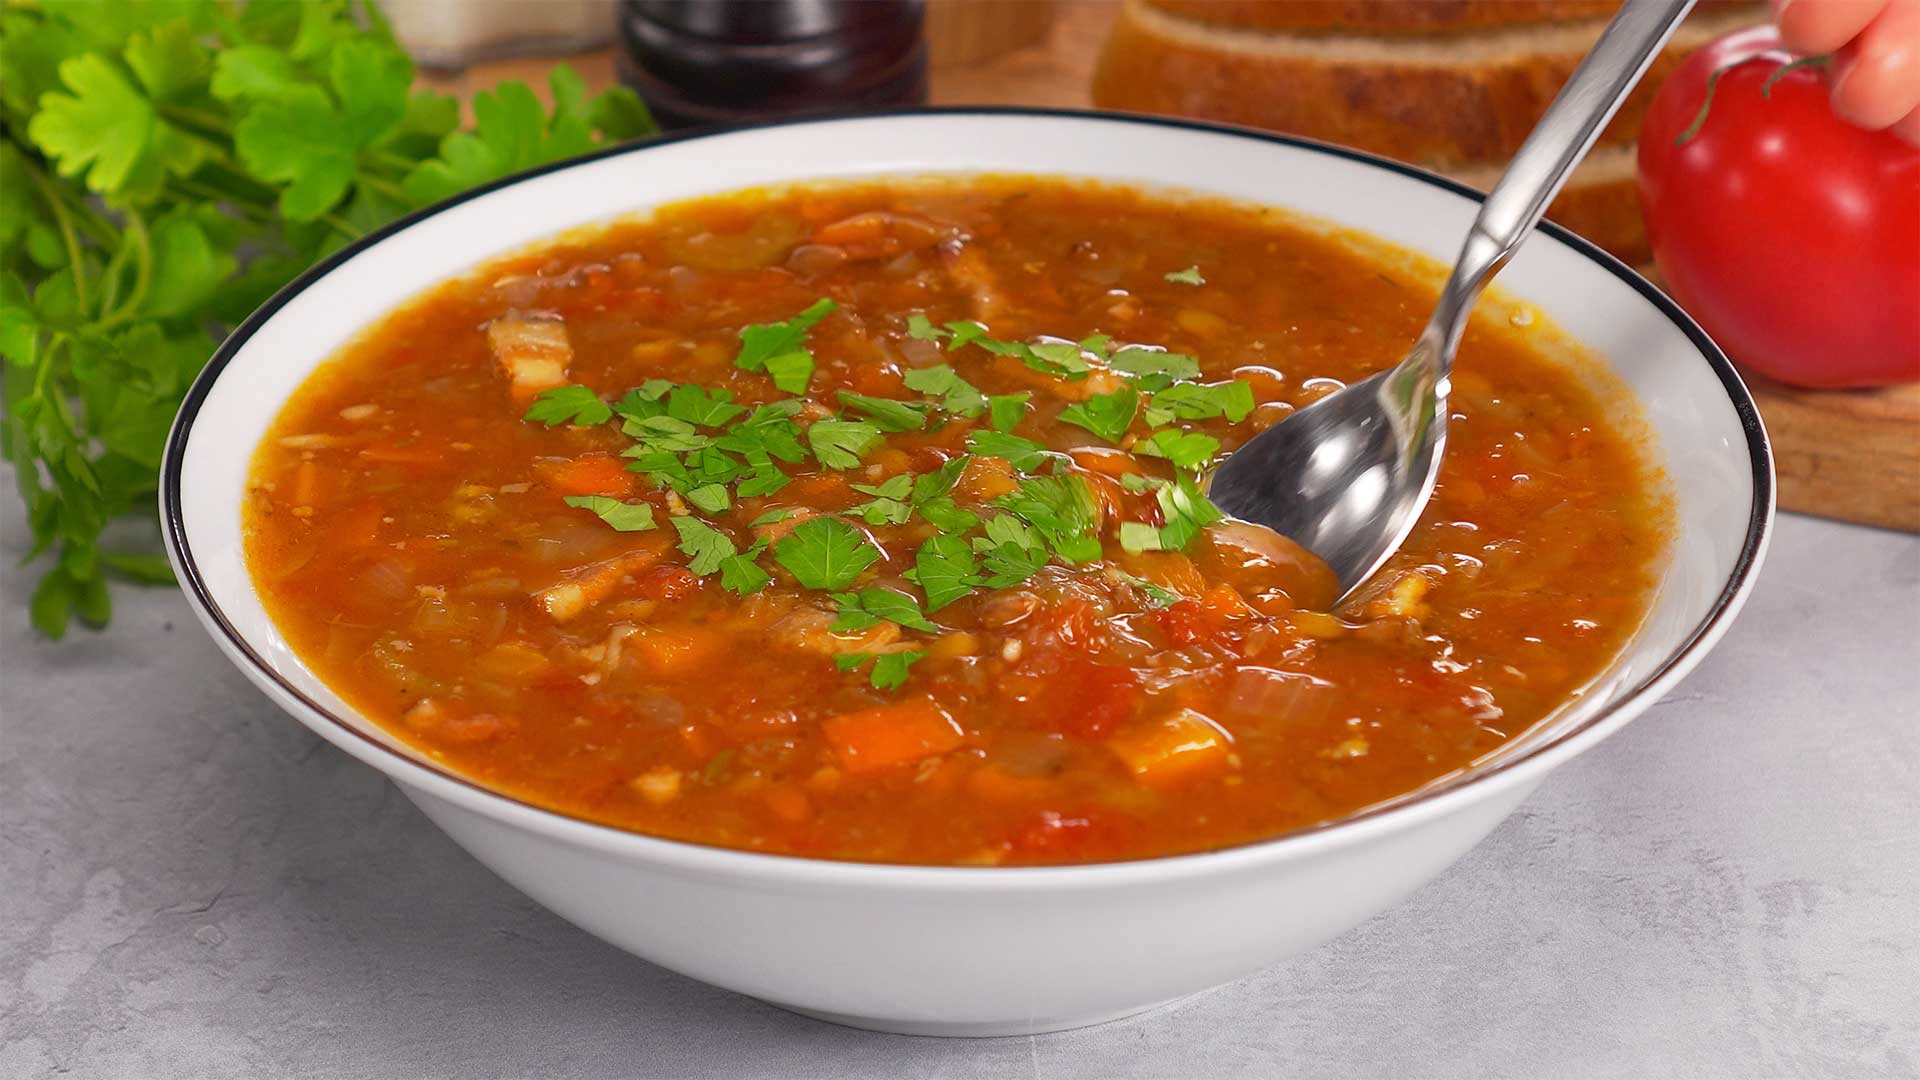 Суп с рецепты с фото простые